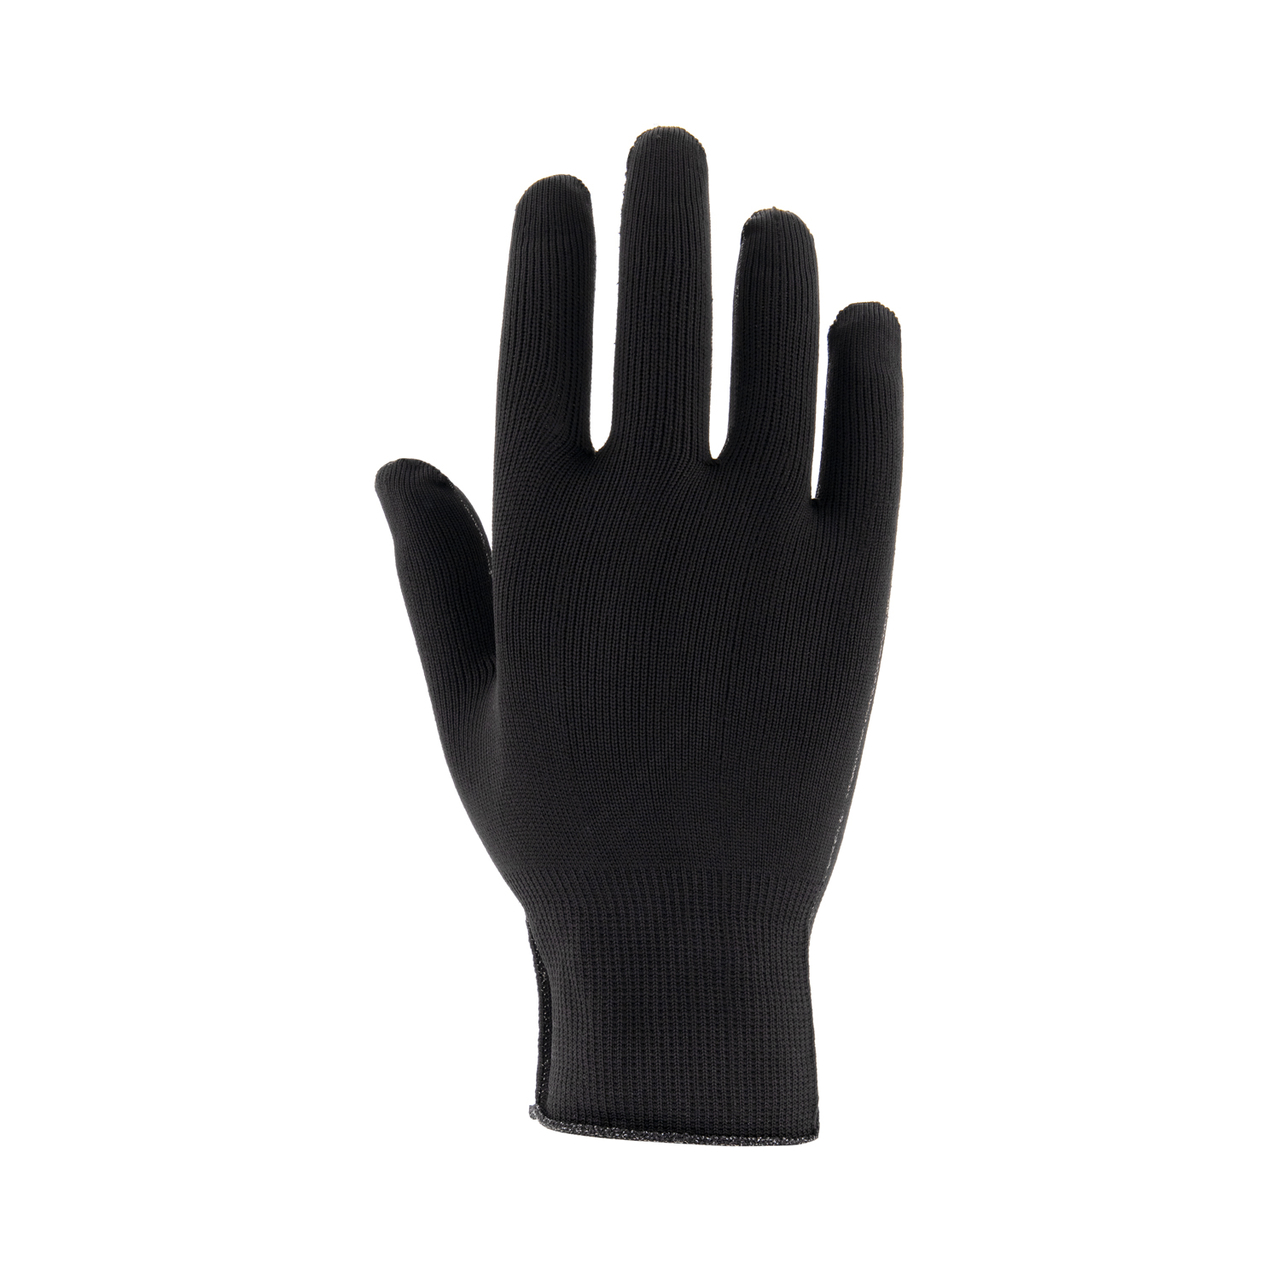 Bungalow Elementair terwijl Skafit zilverhandschoenen (zwart) - Voor warme handen